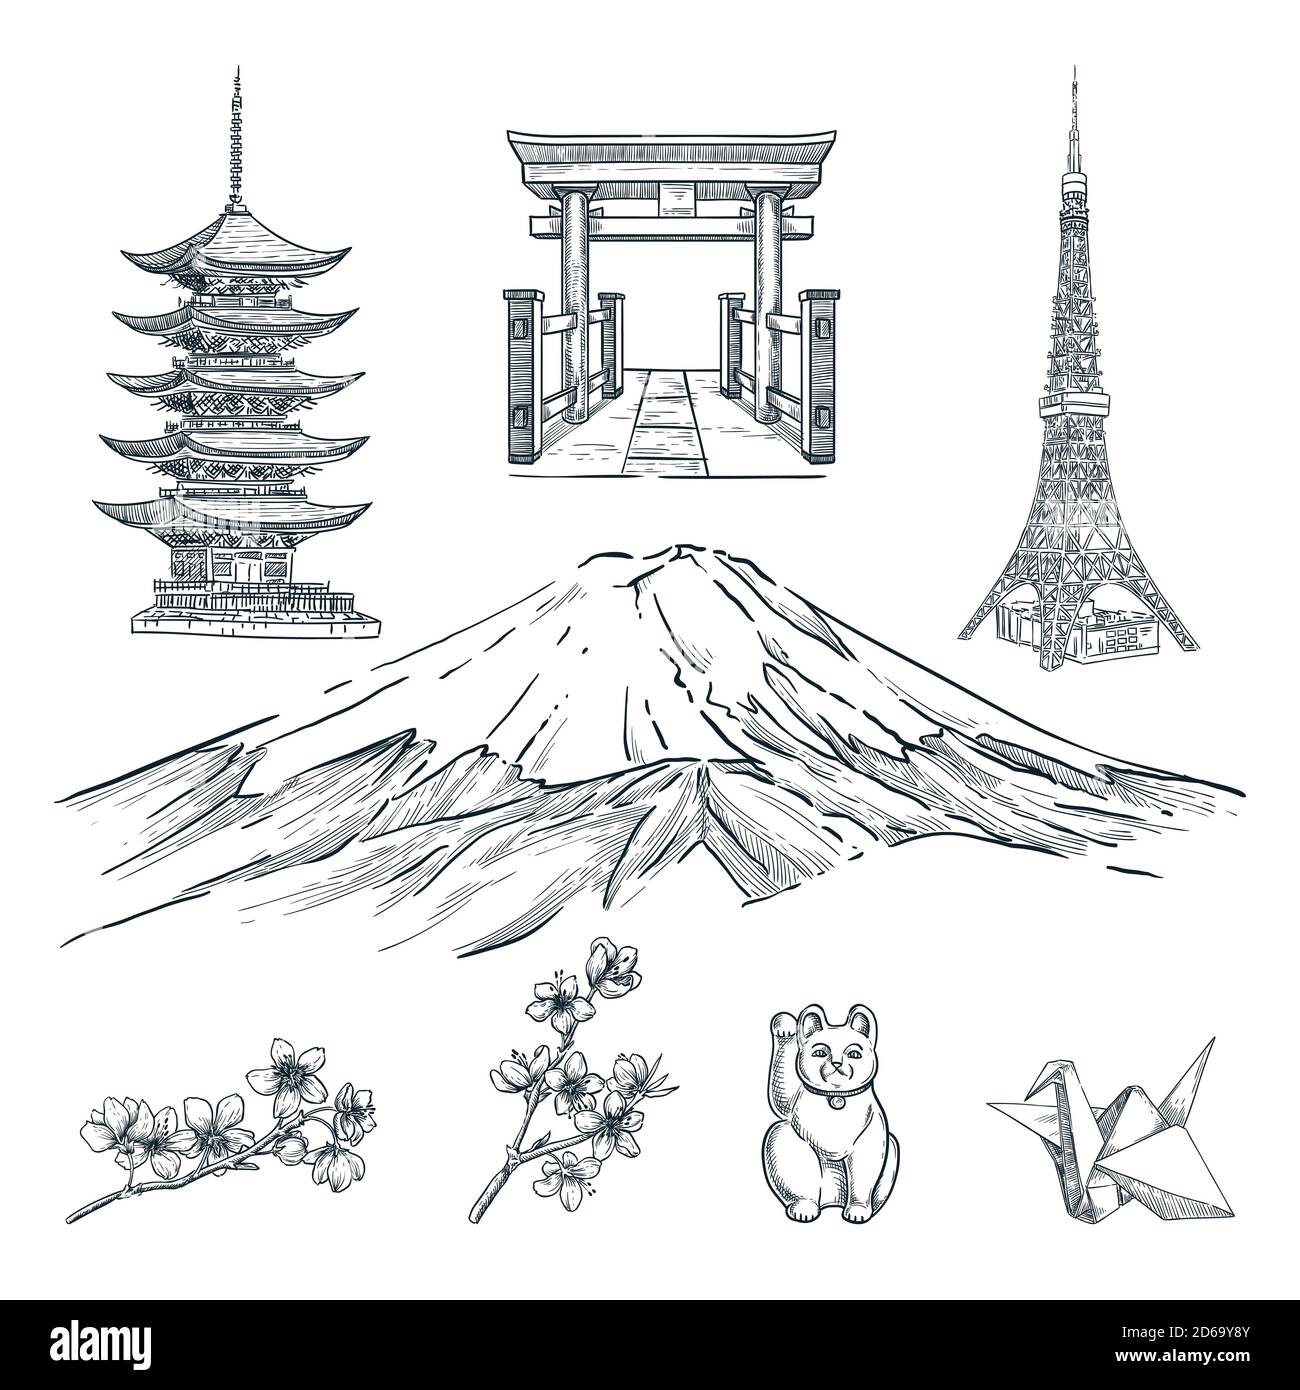 Reisen Sie nach Japan handgezeichnete Designelemente. Vektor Skizze Illustration von Pagode, Berg Fuji, Blüte Sakura Zweig, Turm und Souvenirs. Tokio fam Stock Vektor